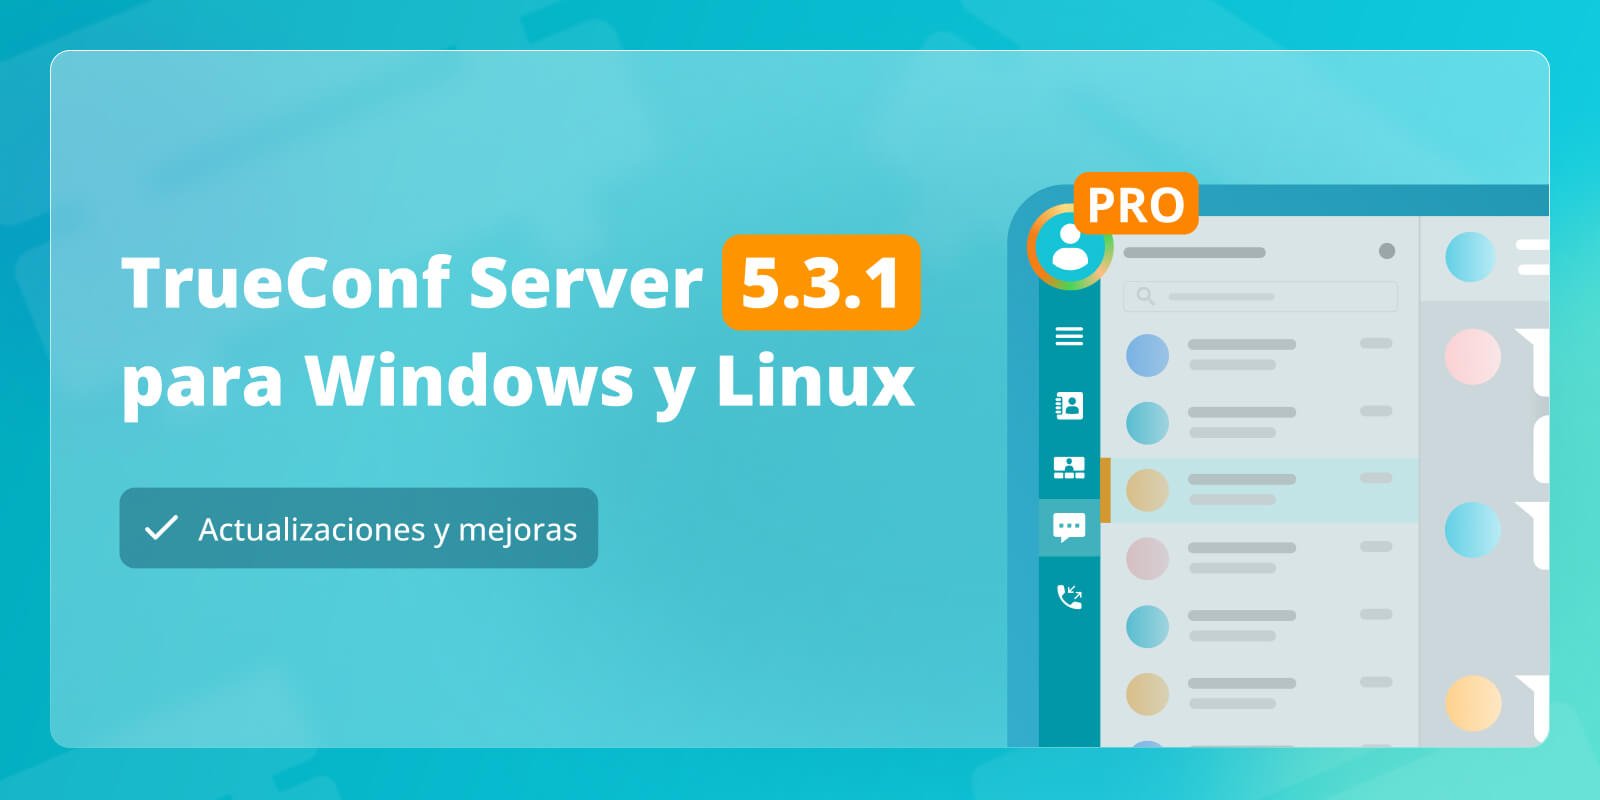 TrueConf Server 5.3.1 para Windows y Linux: Actualizaciones y mejoras 1